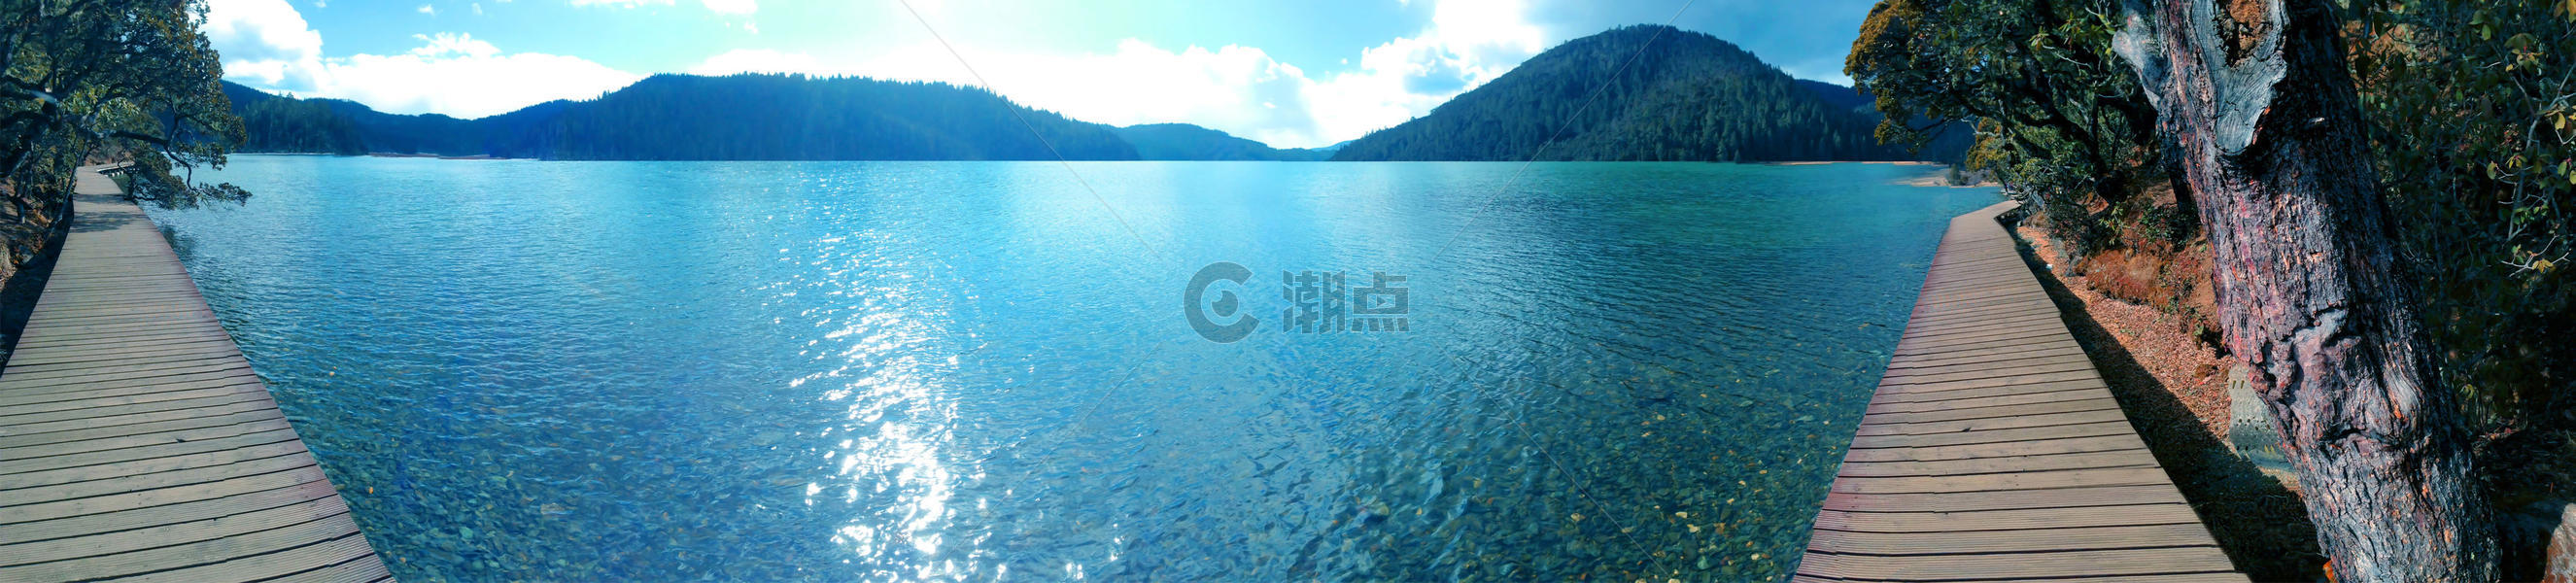 香格里拉普达措公园碧塔海湖泊美景图片素材免费下载